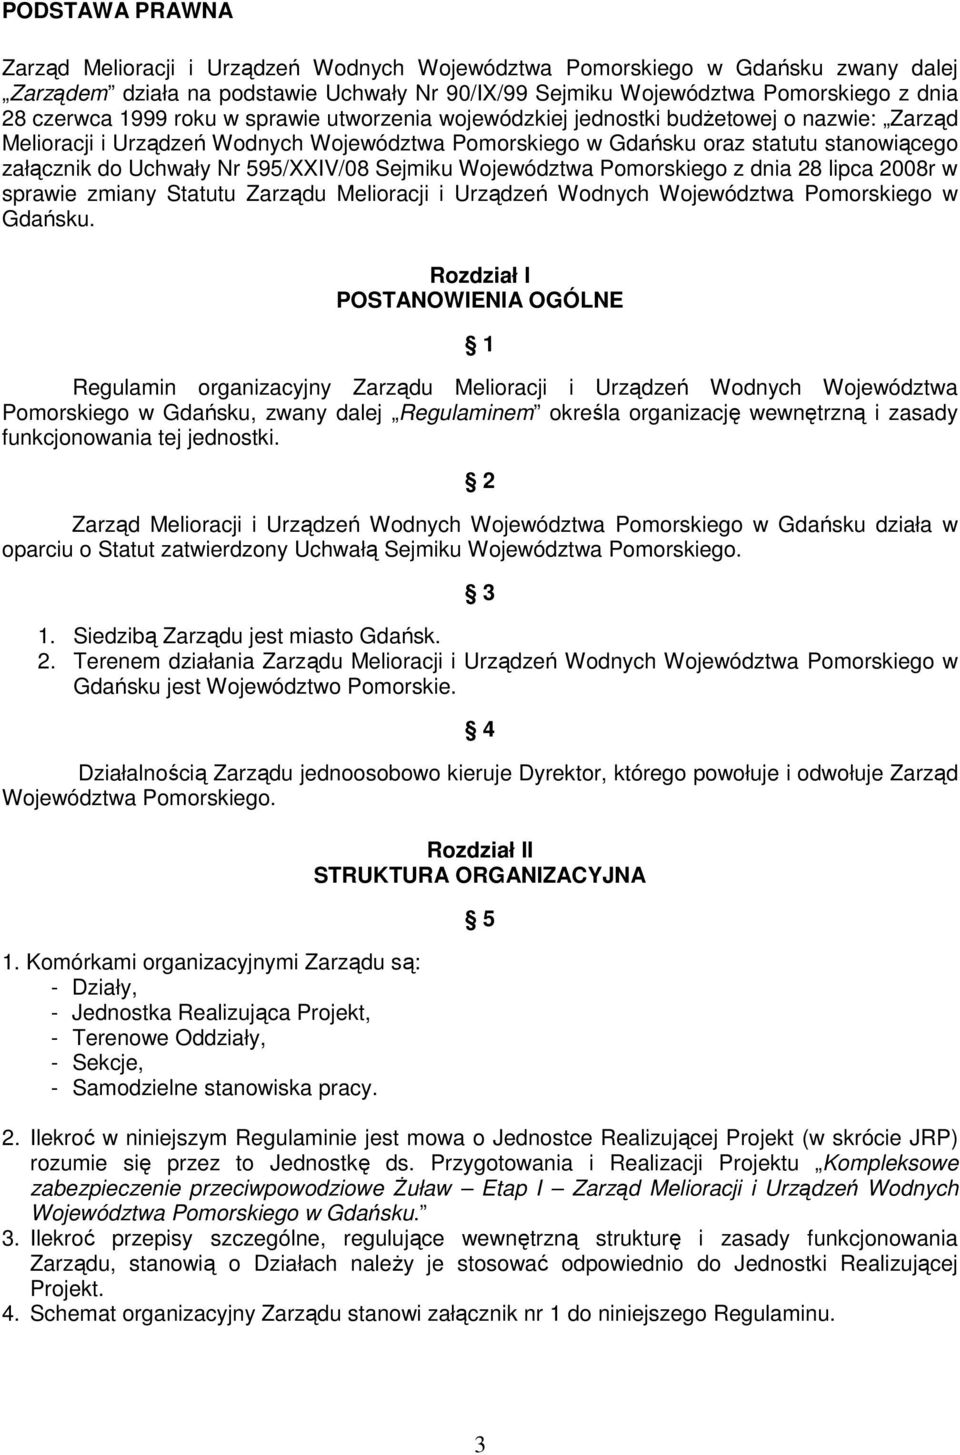 595/XXIV/08 Sejmiku Województwa Pomorskiego z dnia 28 lipca 2008r w sprawie zmiany Statutu Zarządu Melioracji i Urządzeń Wodnych Województwa Pomorskiego w Gdańsku.